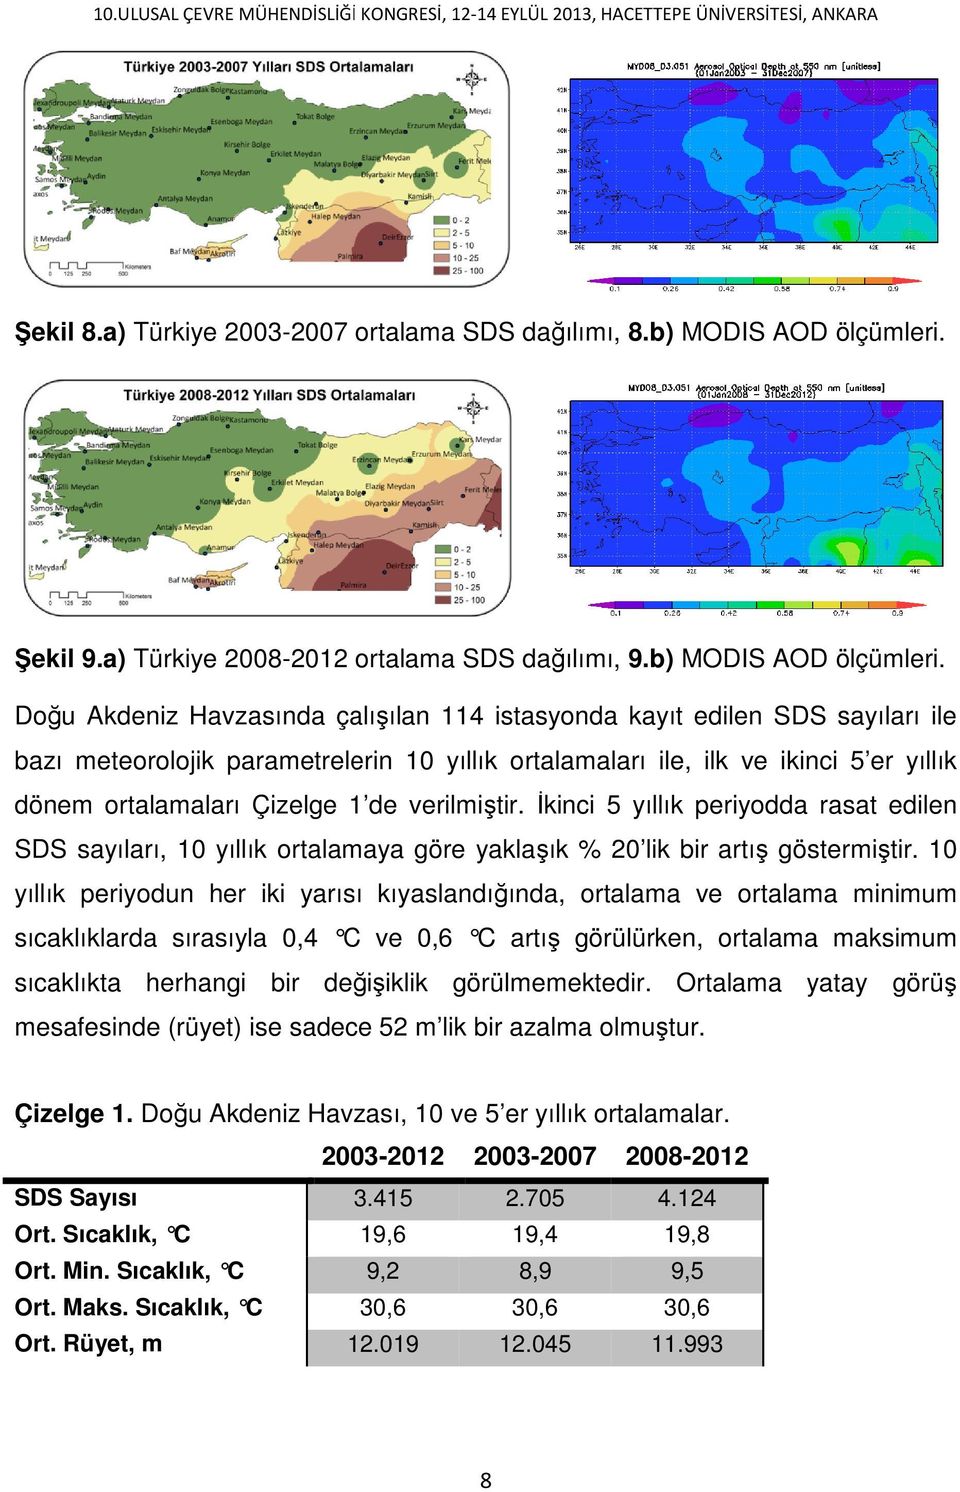 Doğu Akdeniz Havzasında çalışılan ılan 114 istasyonda kayıt edilen SDS sayıları ile bazı meteorolojik parametrelerin 10 yıllık ortalamaları ile, ilk ve ikinci 5 er yıllık dönem ortalamaları Çizelge 1